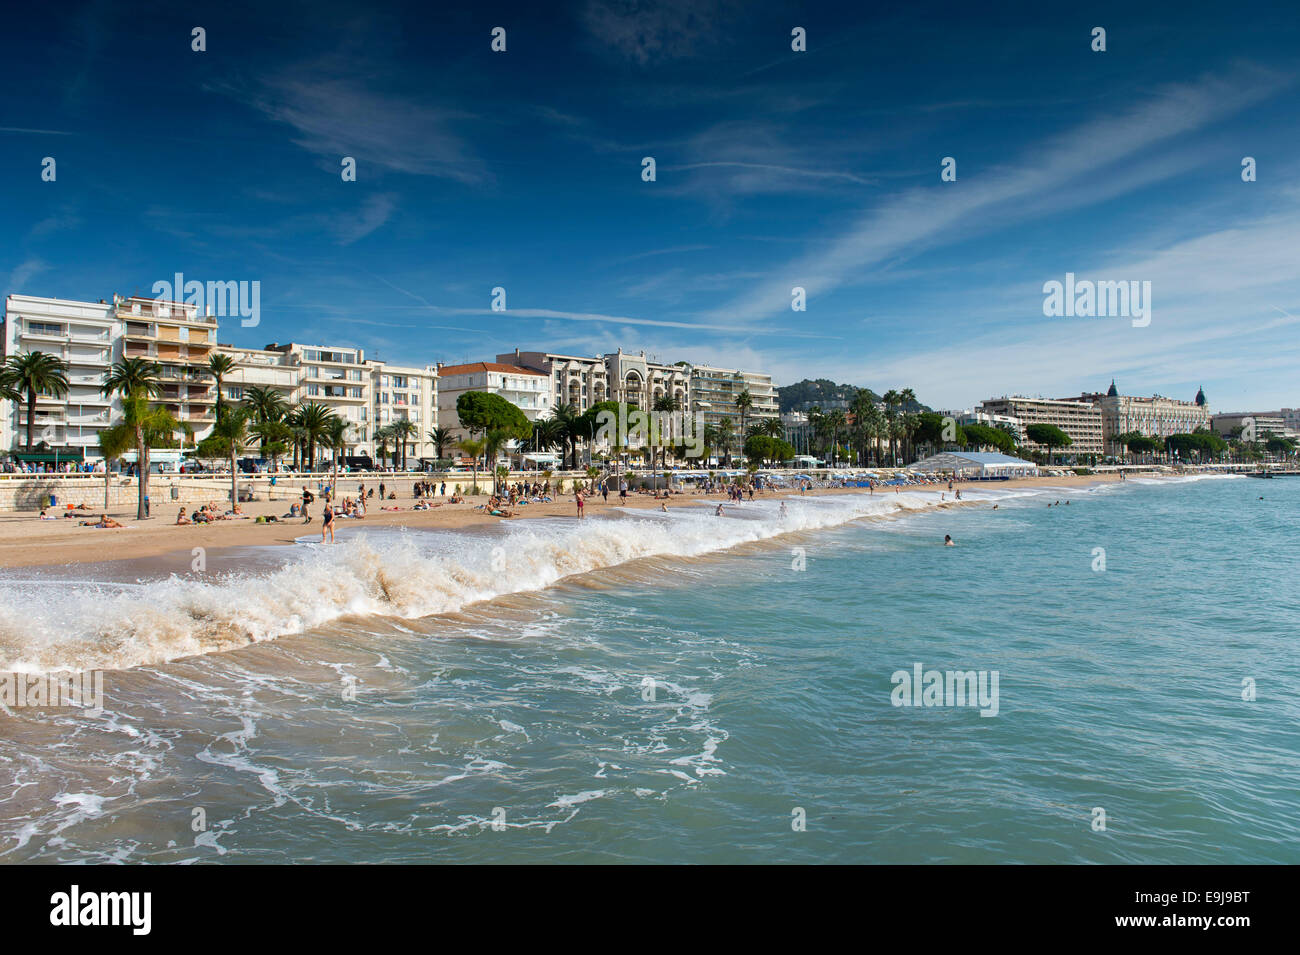 La principale plage de Cannes, sud de la France, sur la route de La Croisette. Banque D'Images